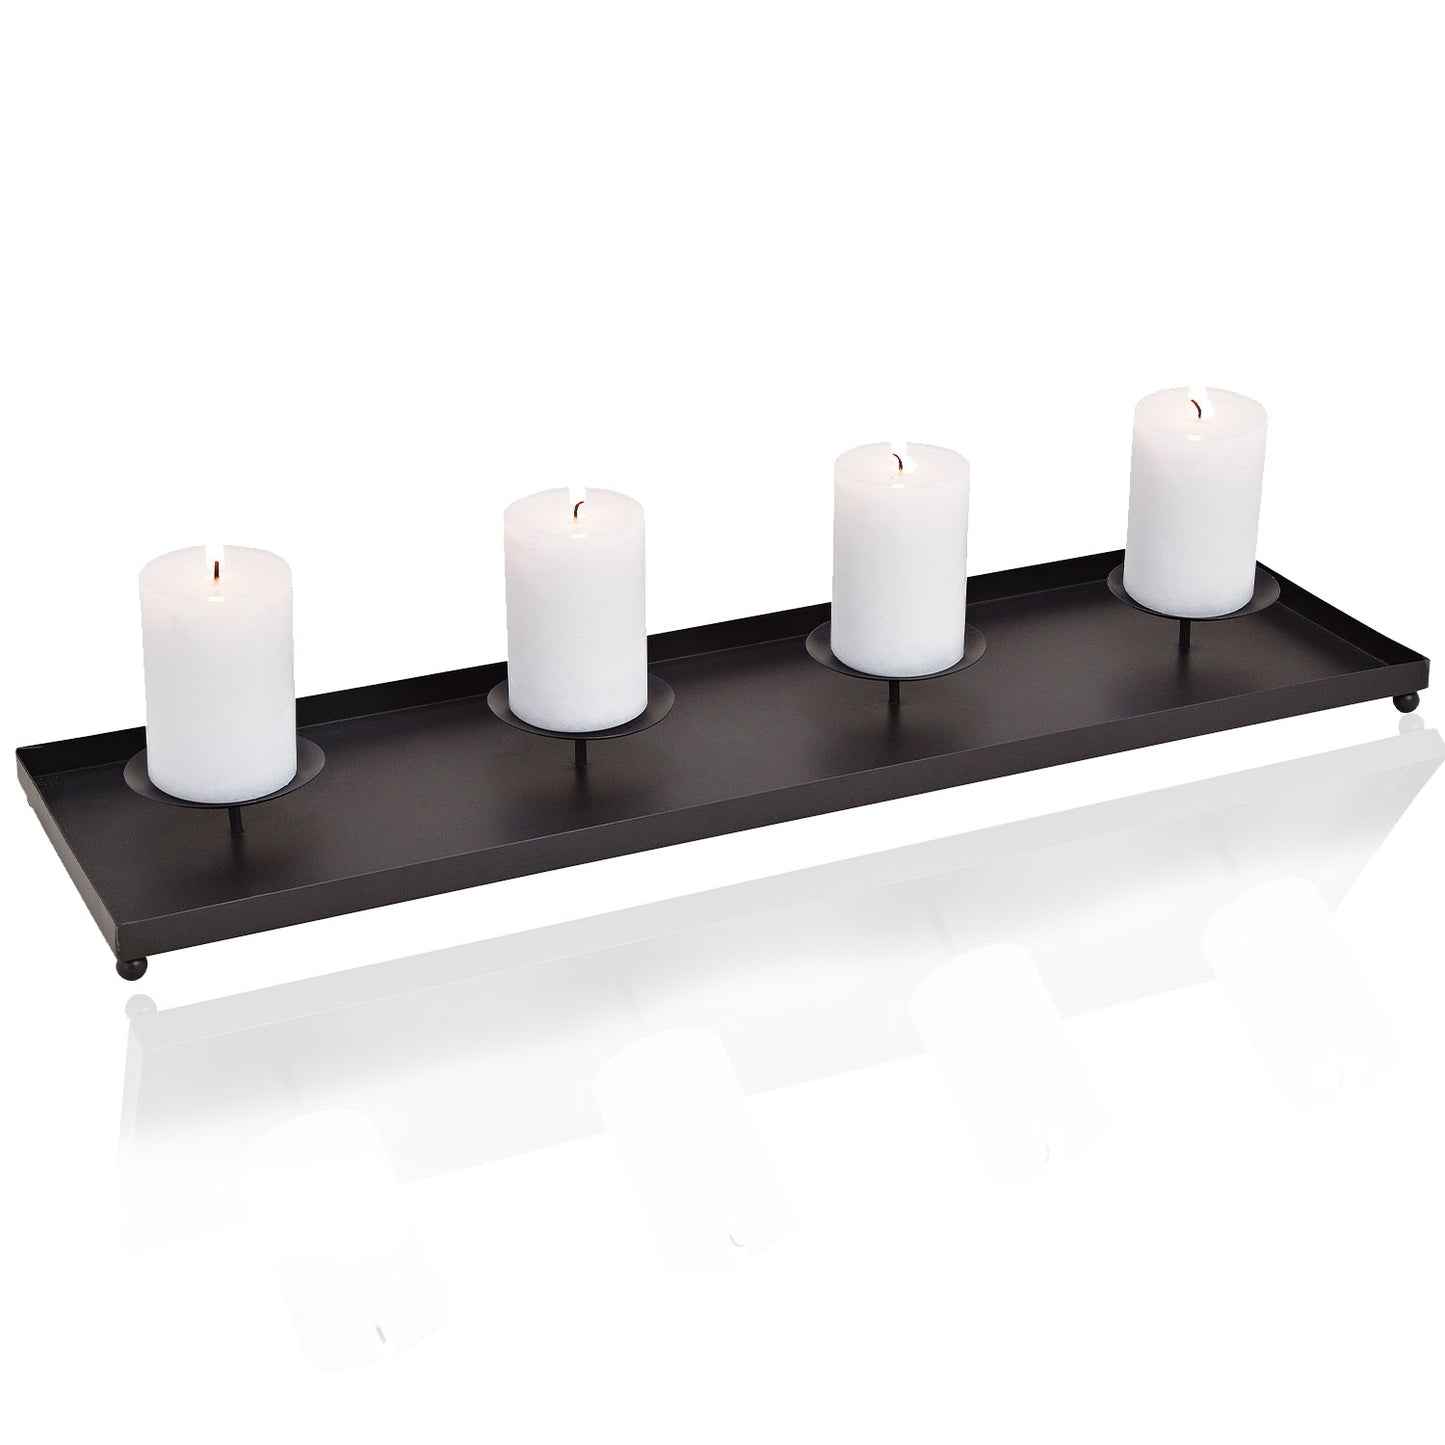 Adventsgesteck, Kerzenhalter, Metall (LxBxH) 60 x 17 x 6 cm, schwarz